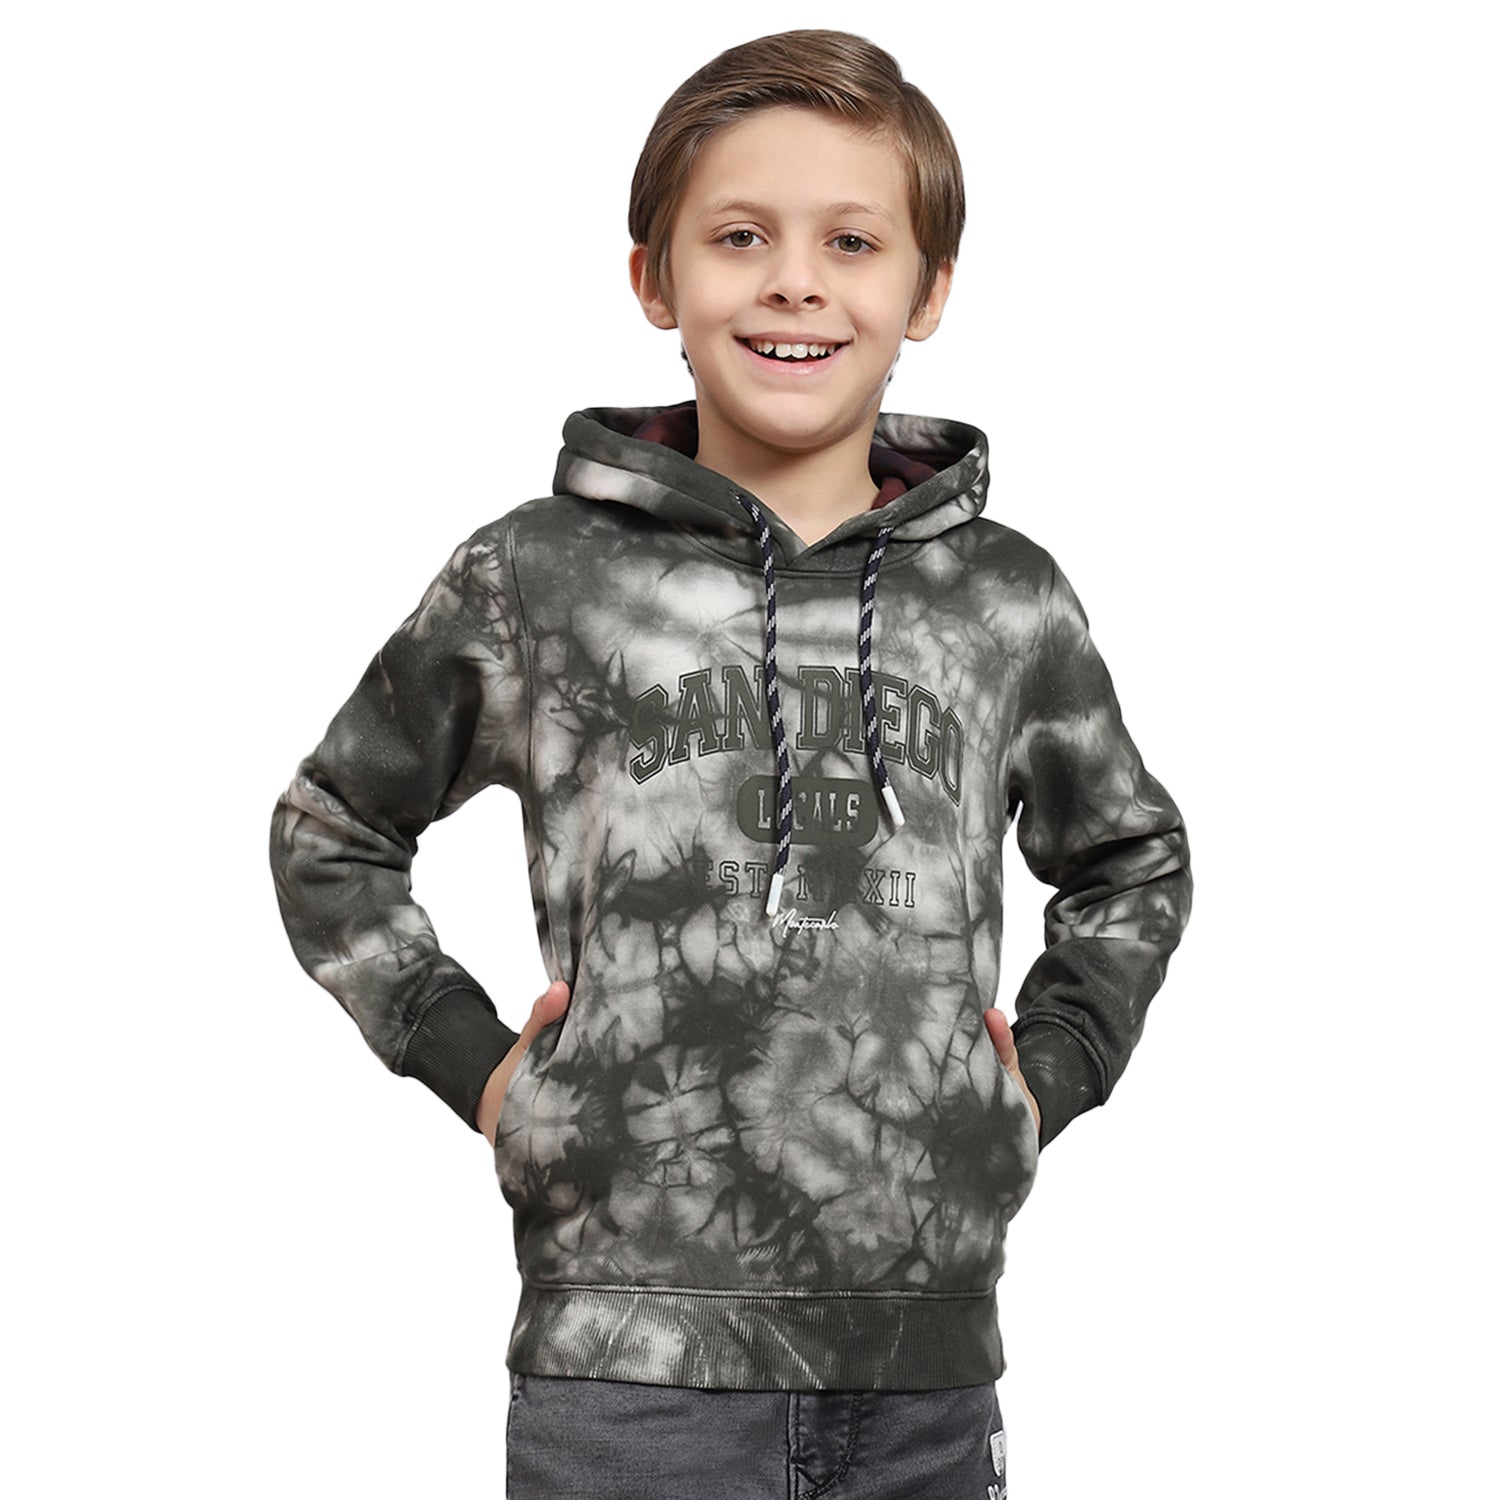 Boys Olive Printed Hooded Full Sleeve Sweatshirt